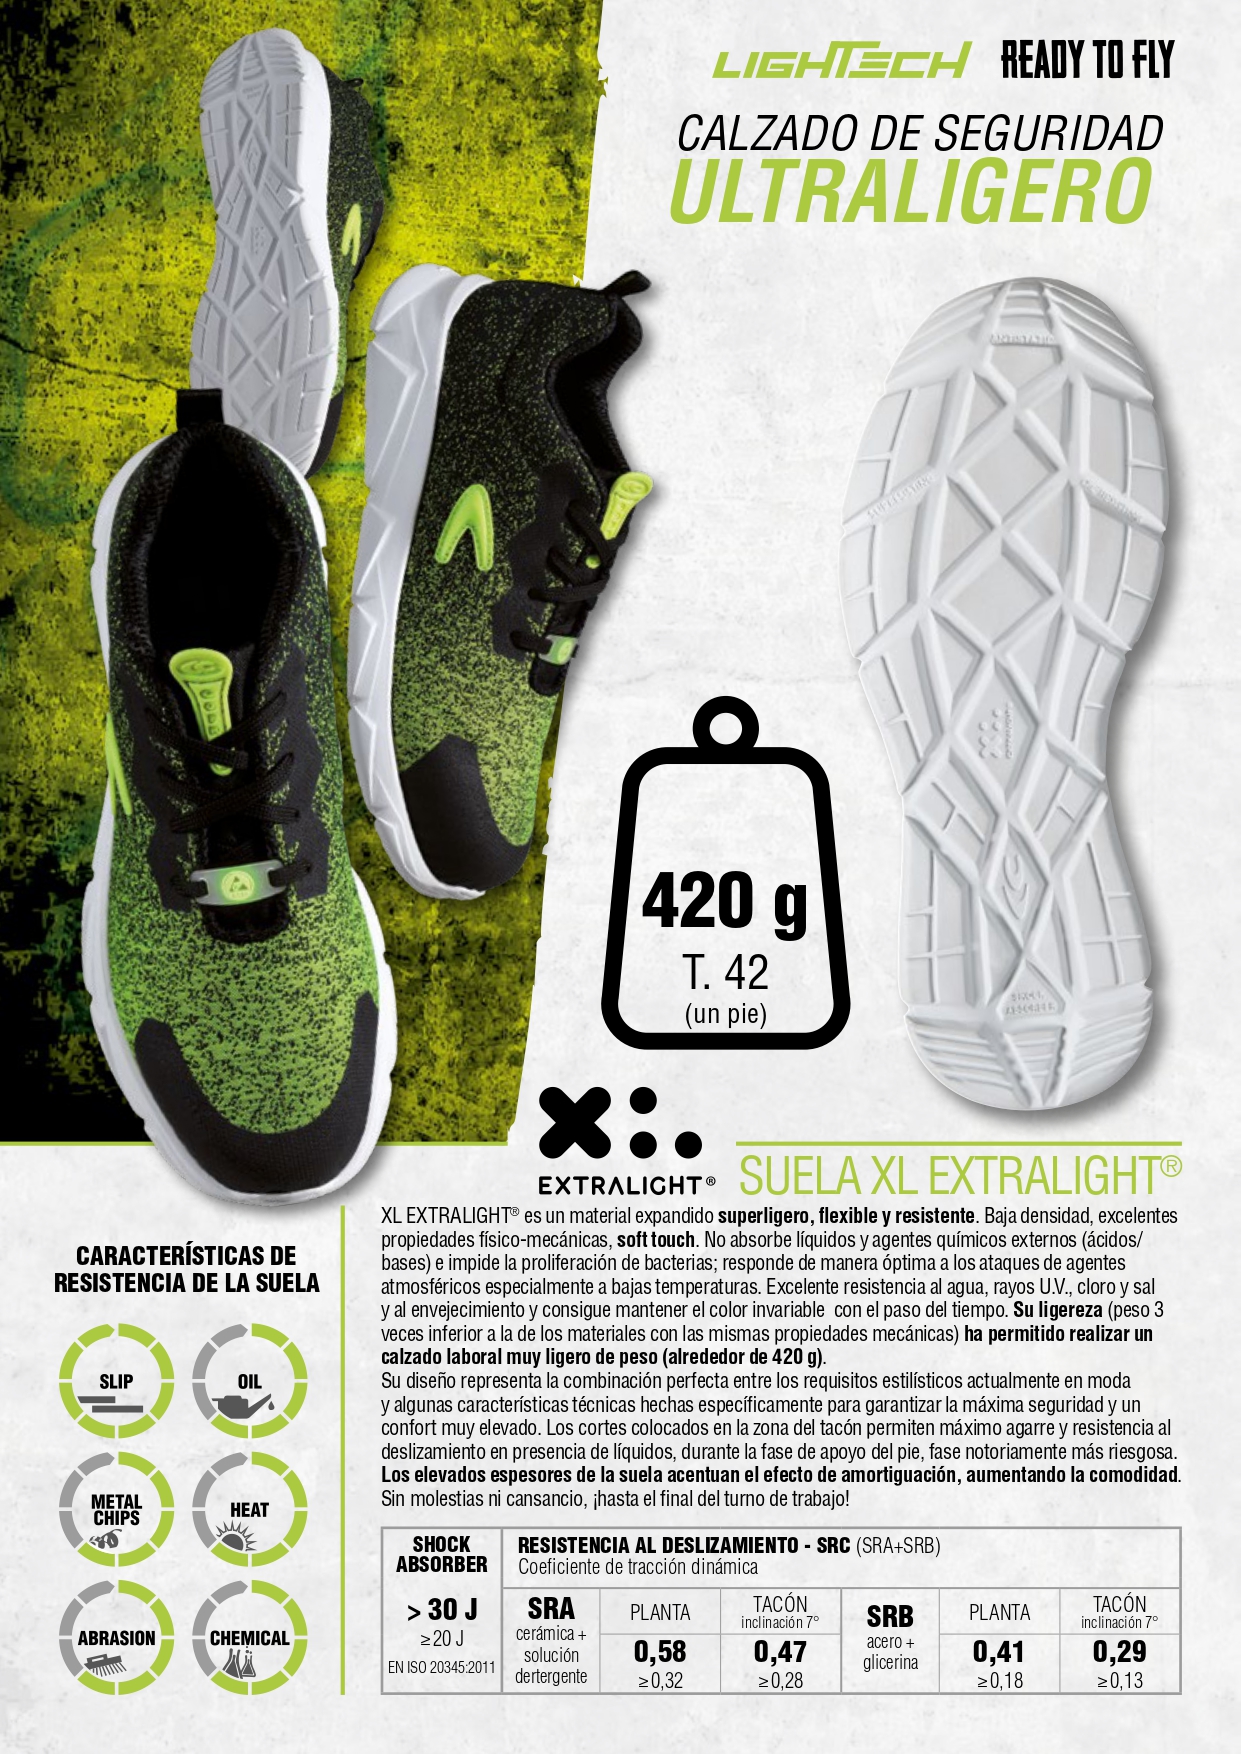 Zapato Cofra Cool Lightech ESD S3